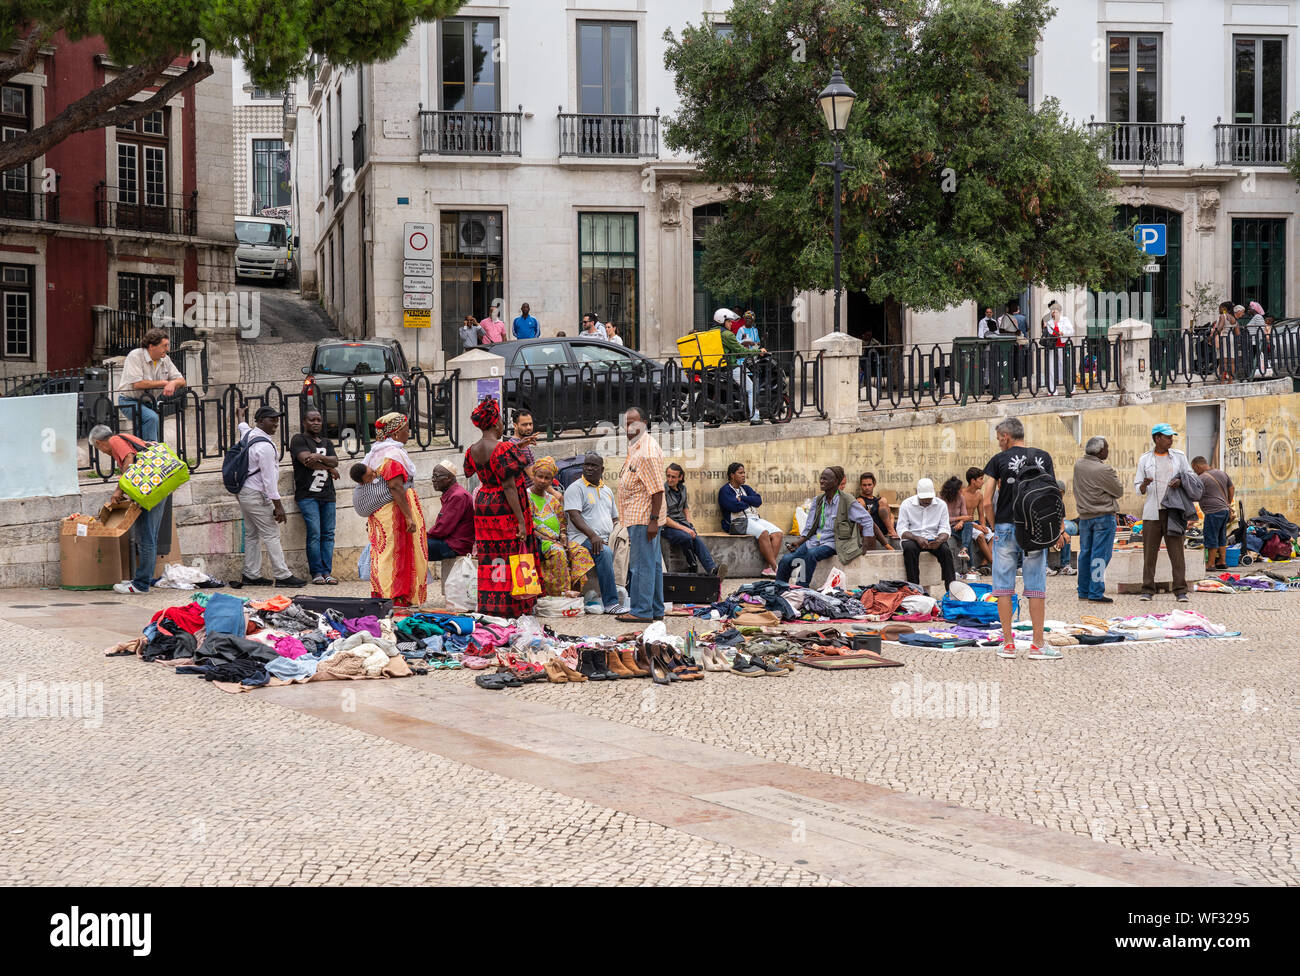 Mercato delle pulci o accozzaglia vendita nel centro cittadino di Lisbona Foto Stock